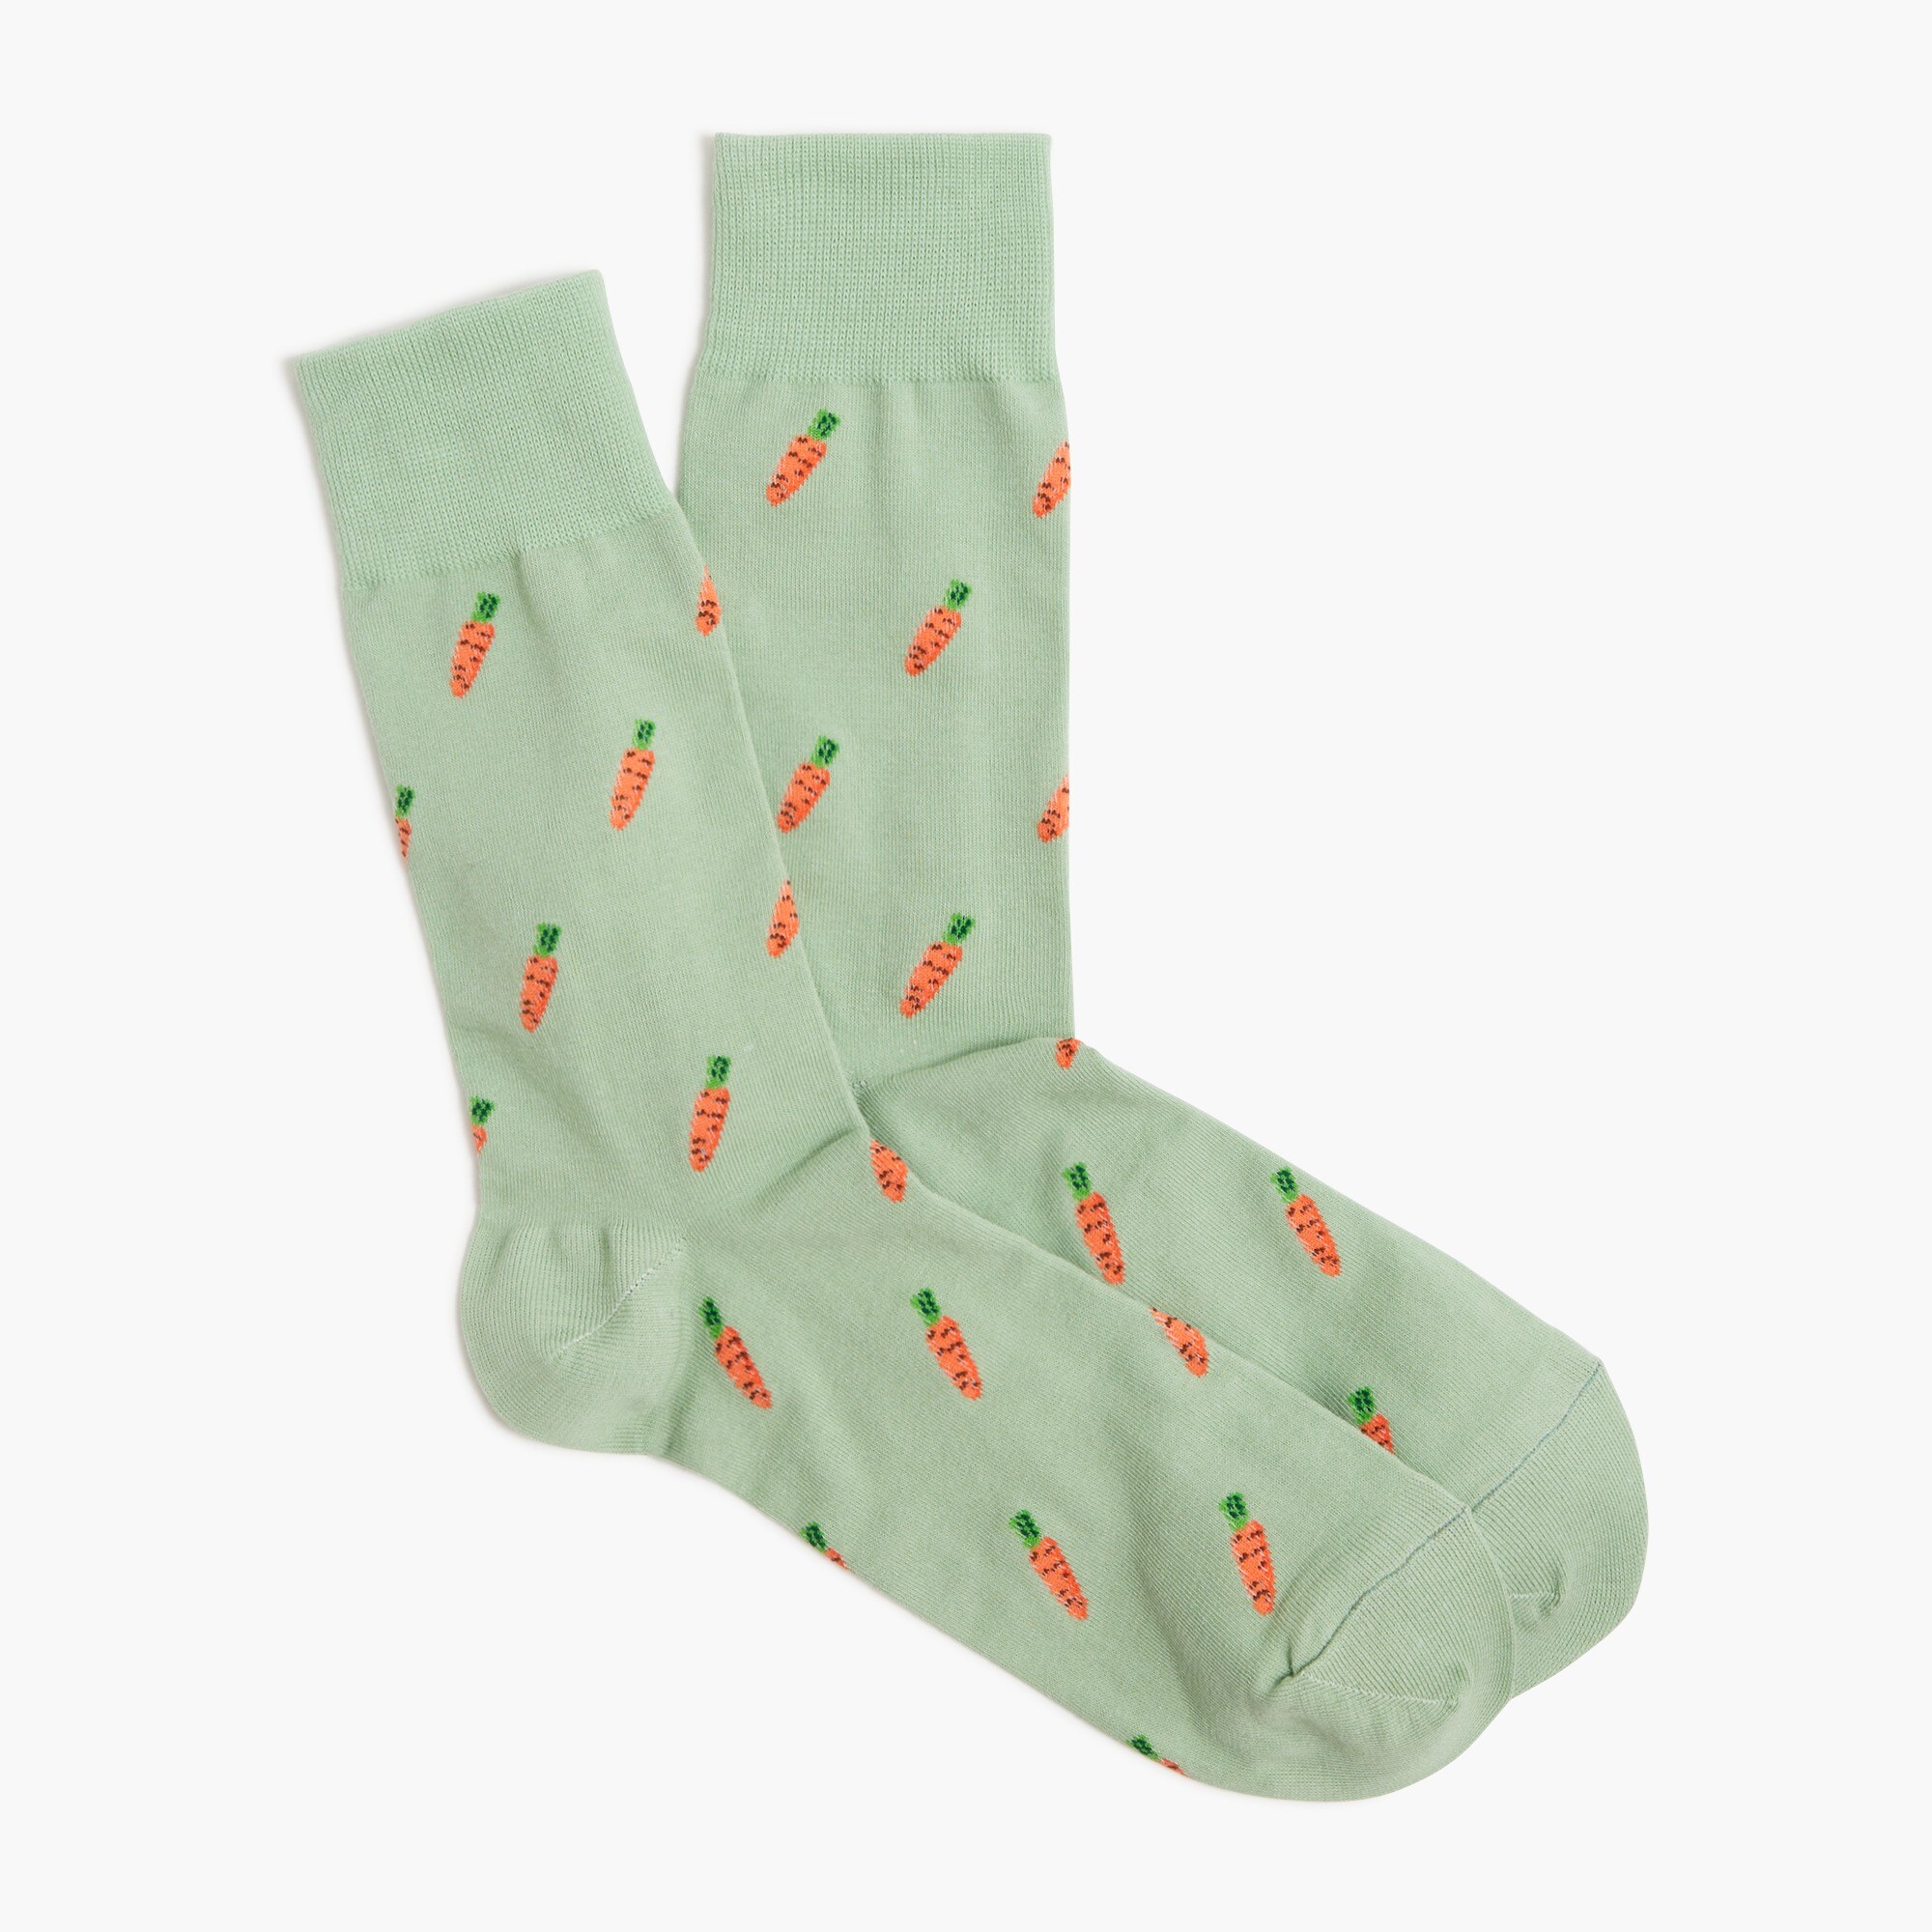  Carrot socks